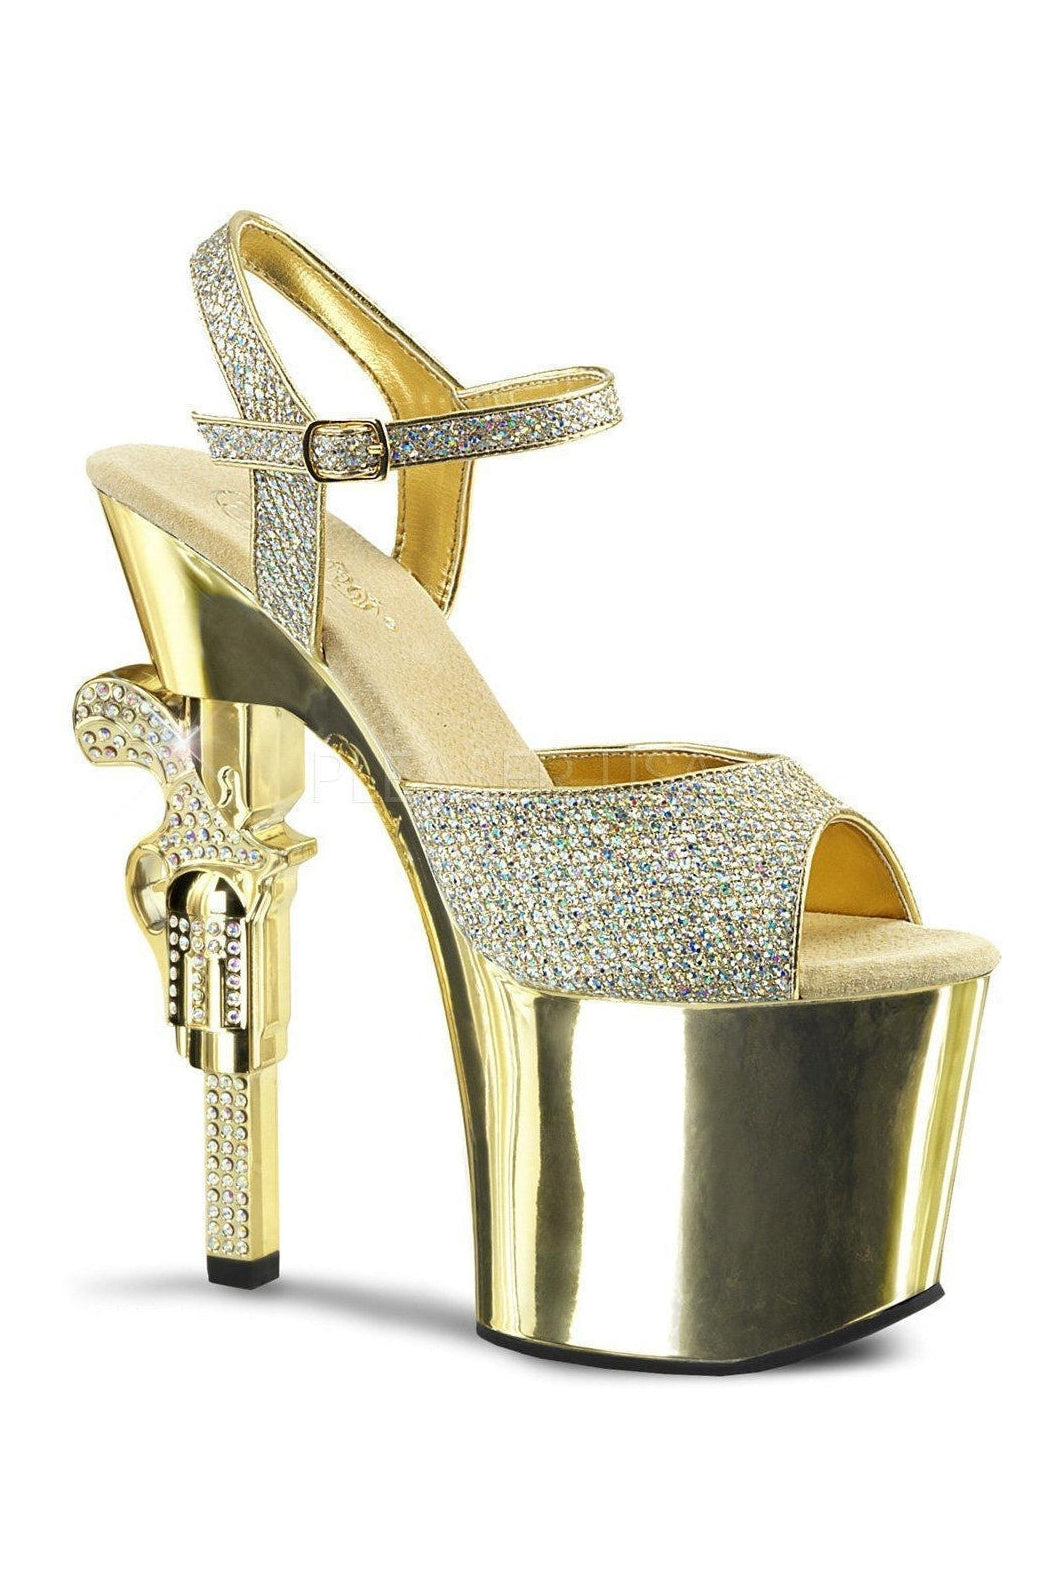 REVOLVER-709G Platform Sandal | Gold Glitter-Pleaser-Gold-Sandals-SEXYSHOES.COM